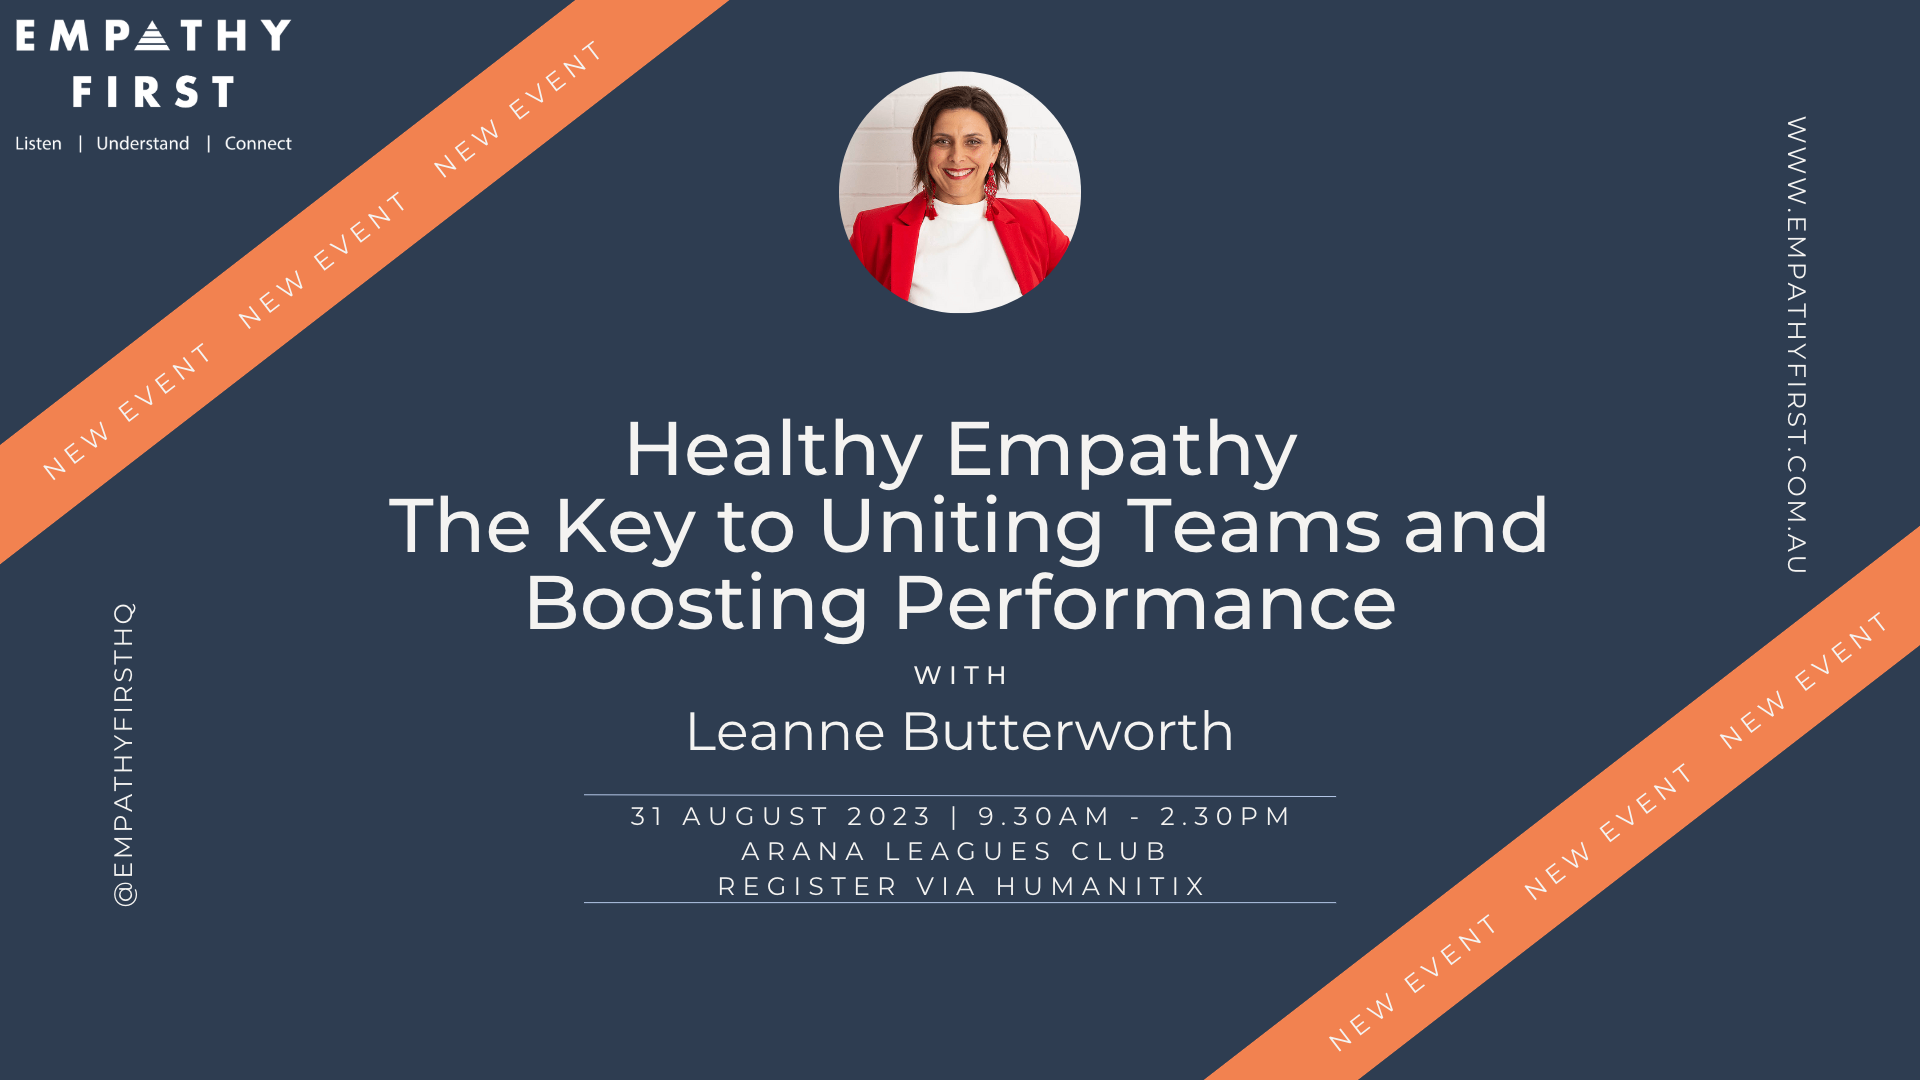 Healthy Empathy and teams